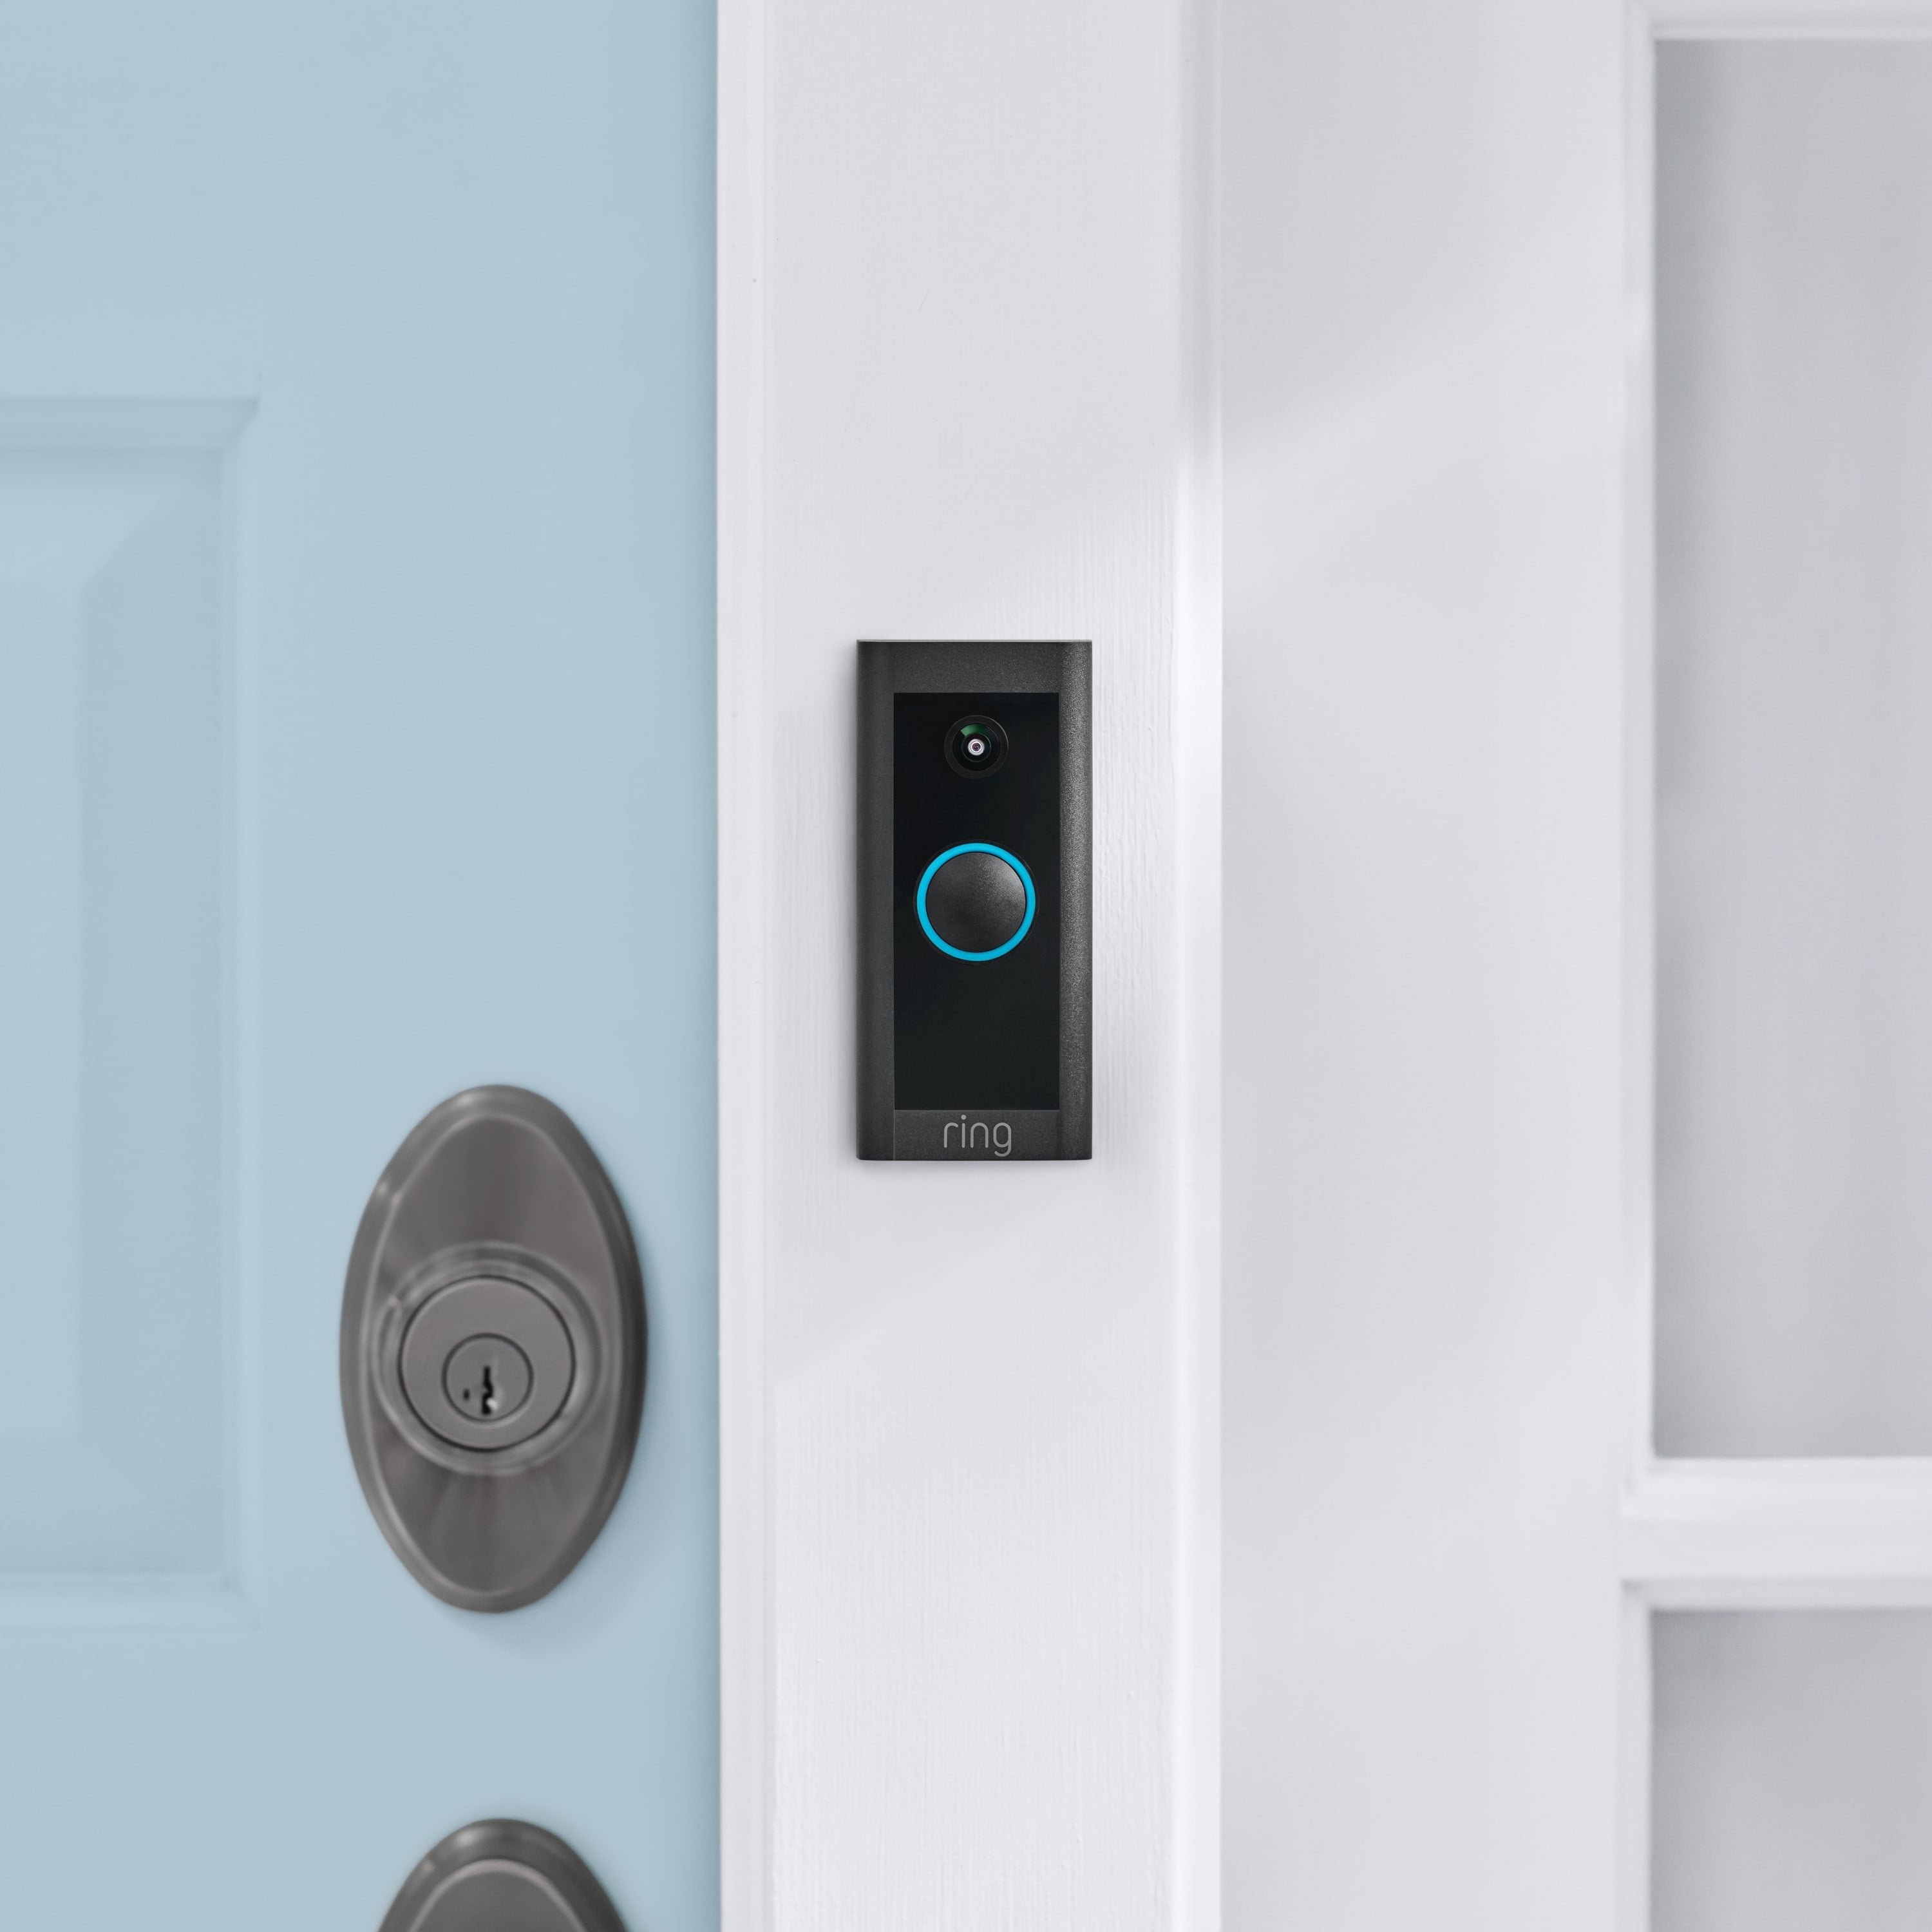 5-Piece Alarm Security Kit + Video Doorbell Wired (for 2nd Generation) - Video Doorbell Wired, 2nd Generation mounted to white door frame next to front door.